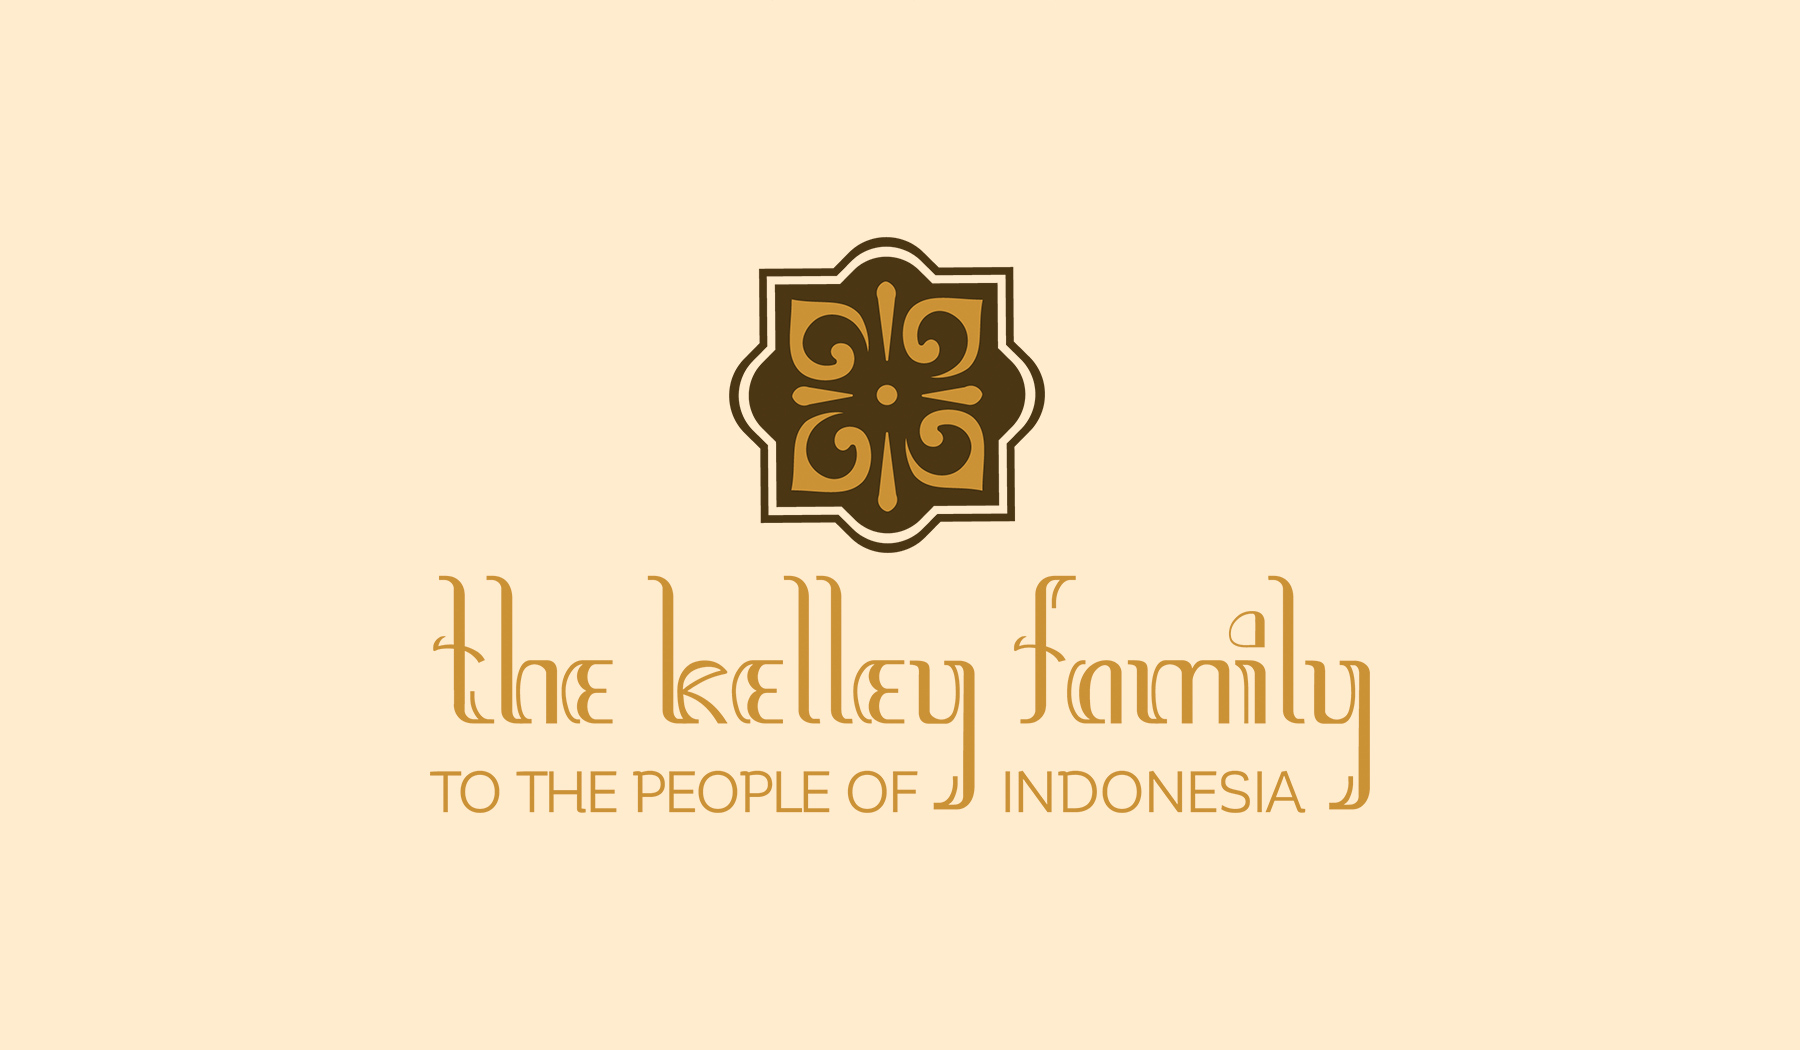 Kelley_Family